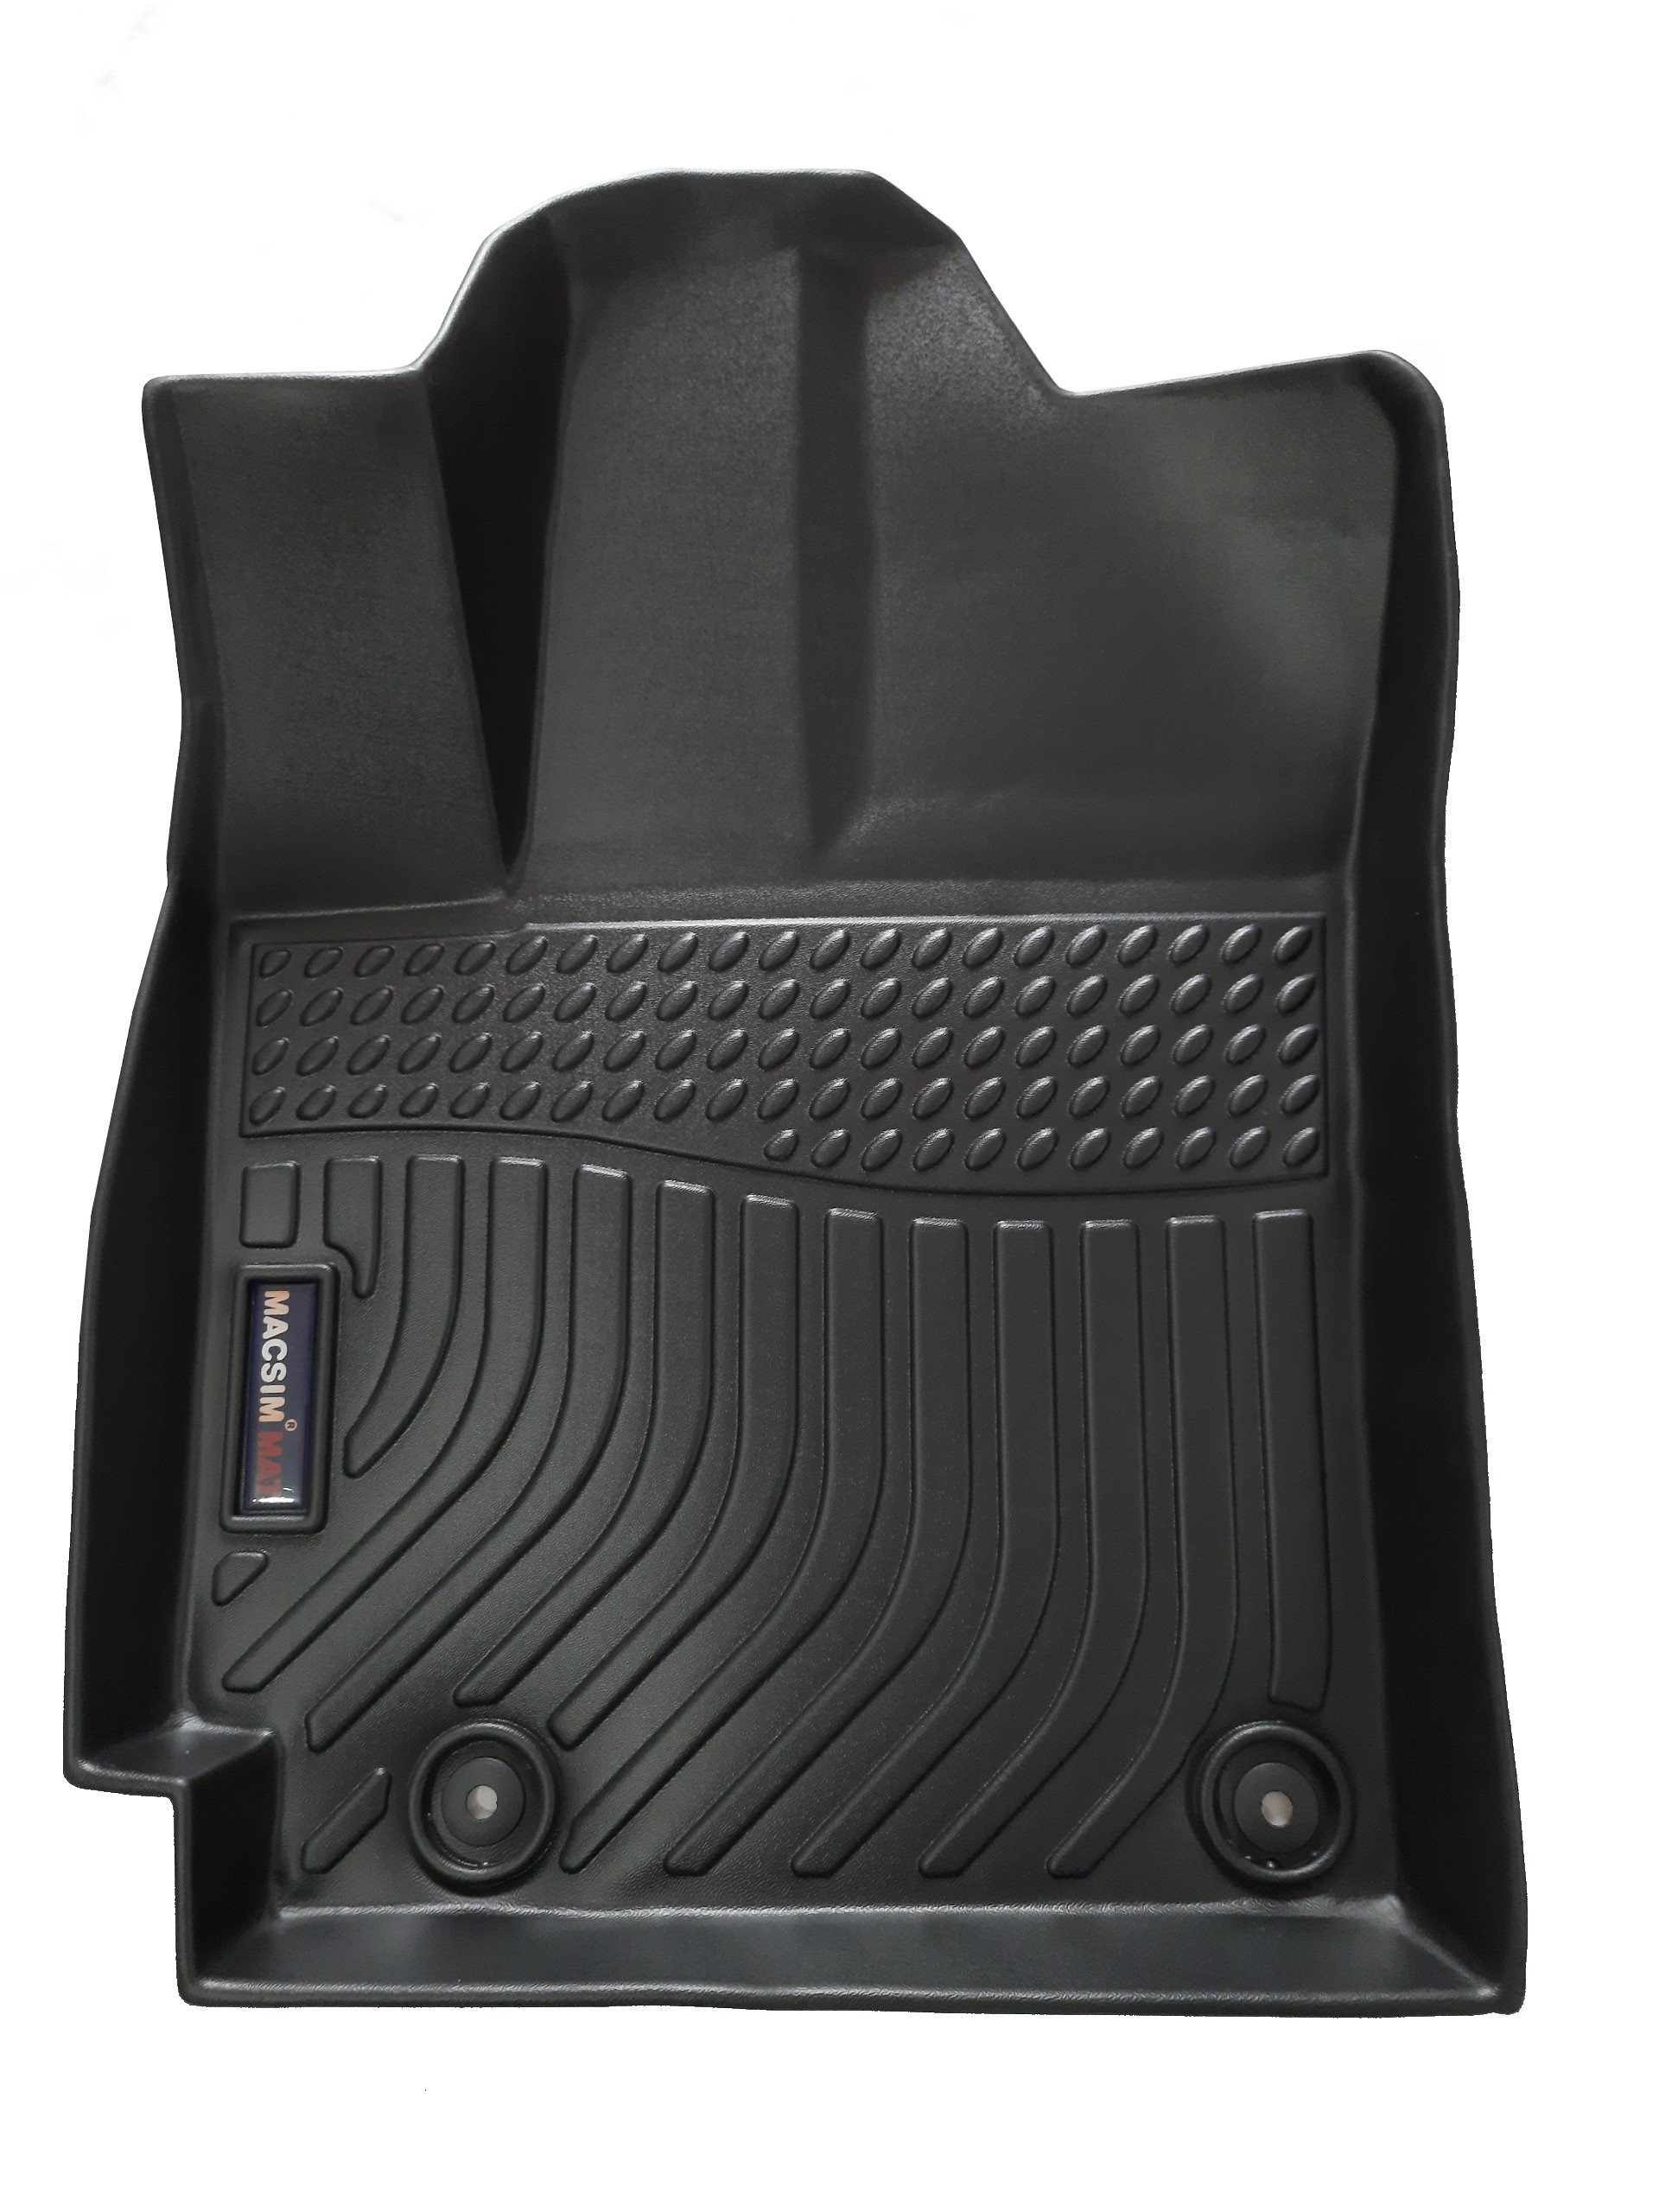 Thảm lót sàn xe ô tô sd Hyundai Kona 2018 - 2022 Nhãn hiệu Macsim chất liệu nhựa TPE cao cấp màu đen